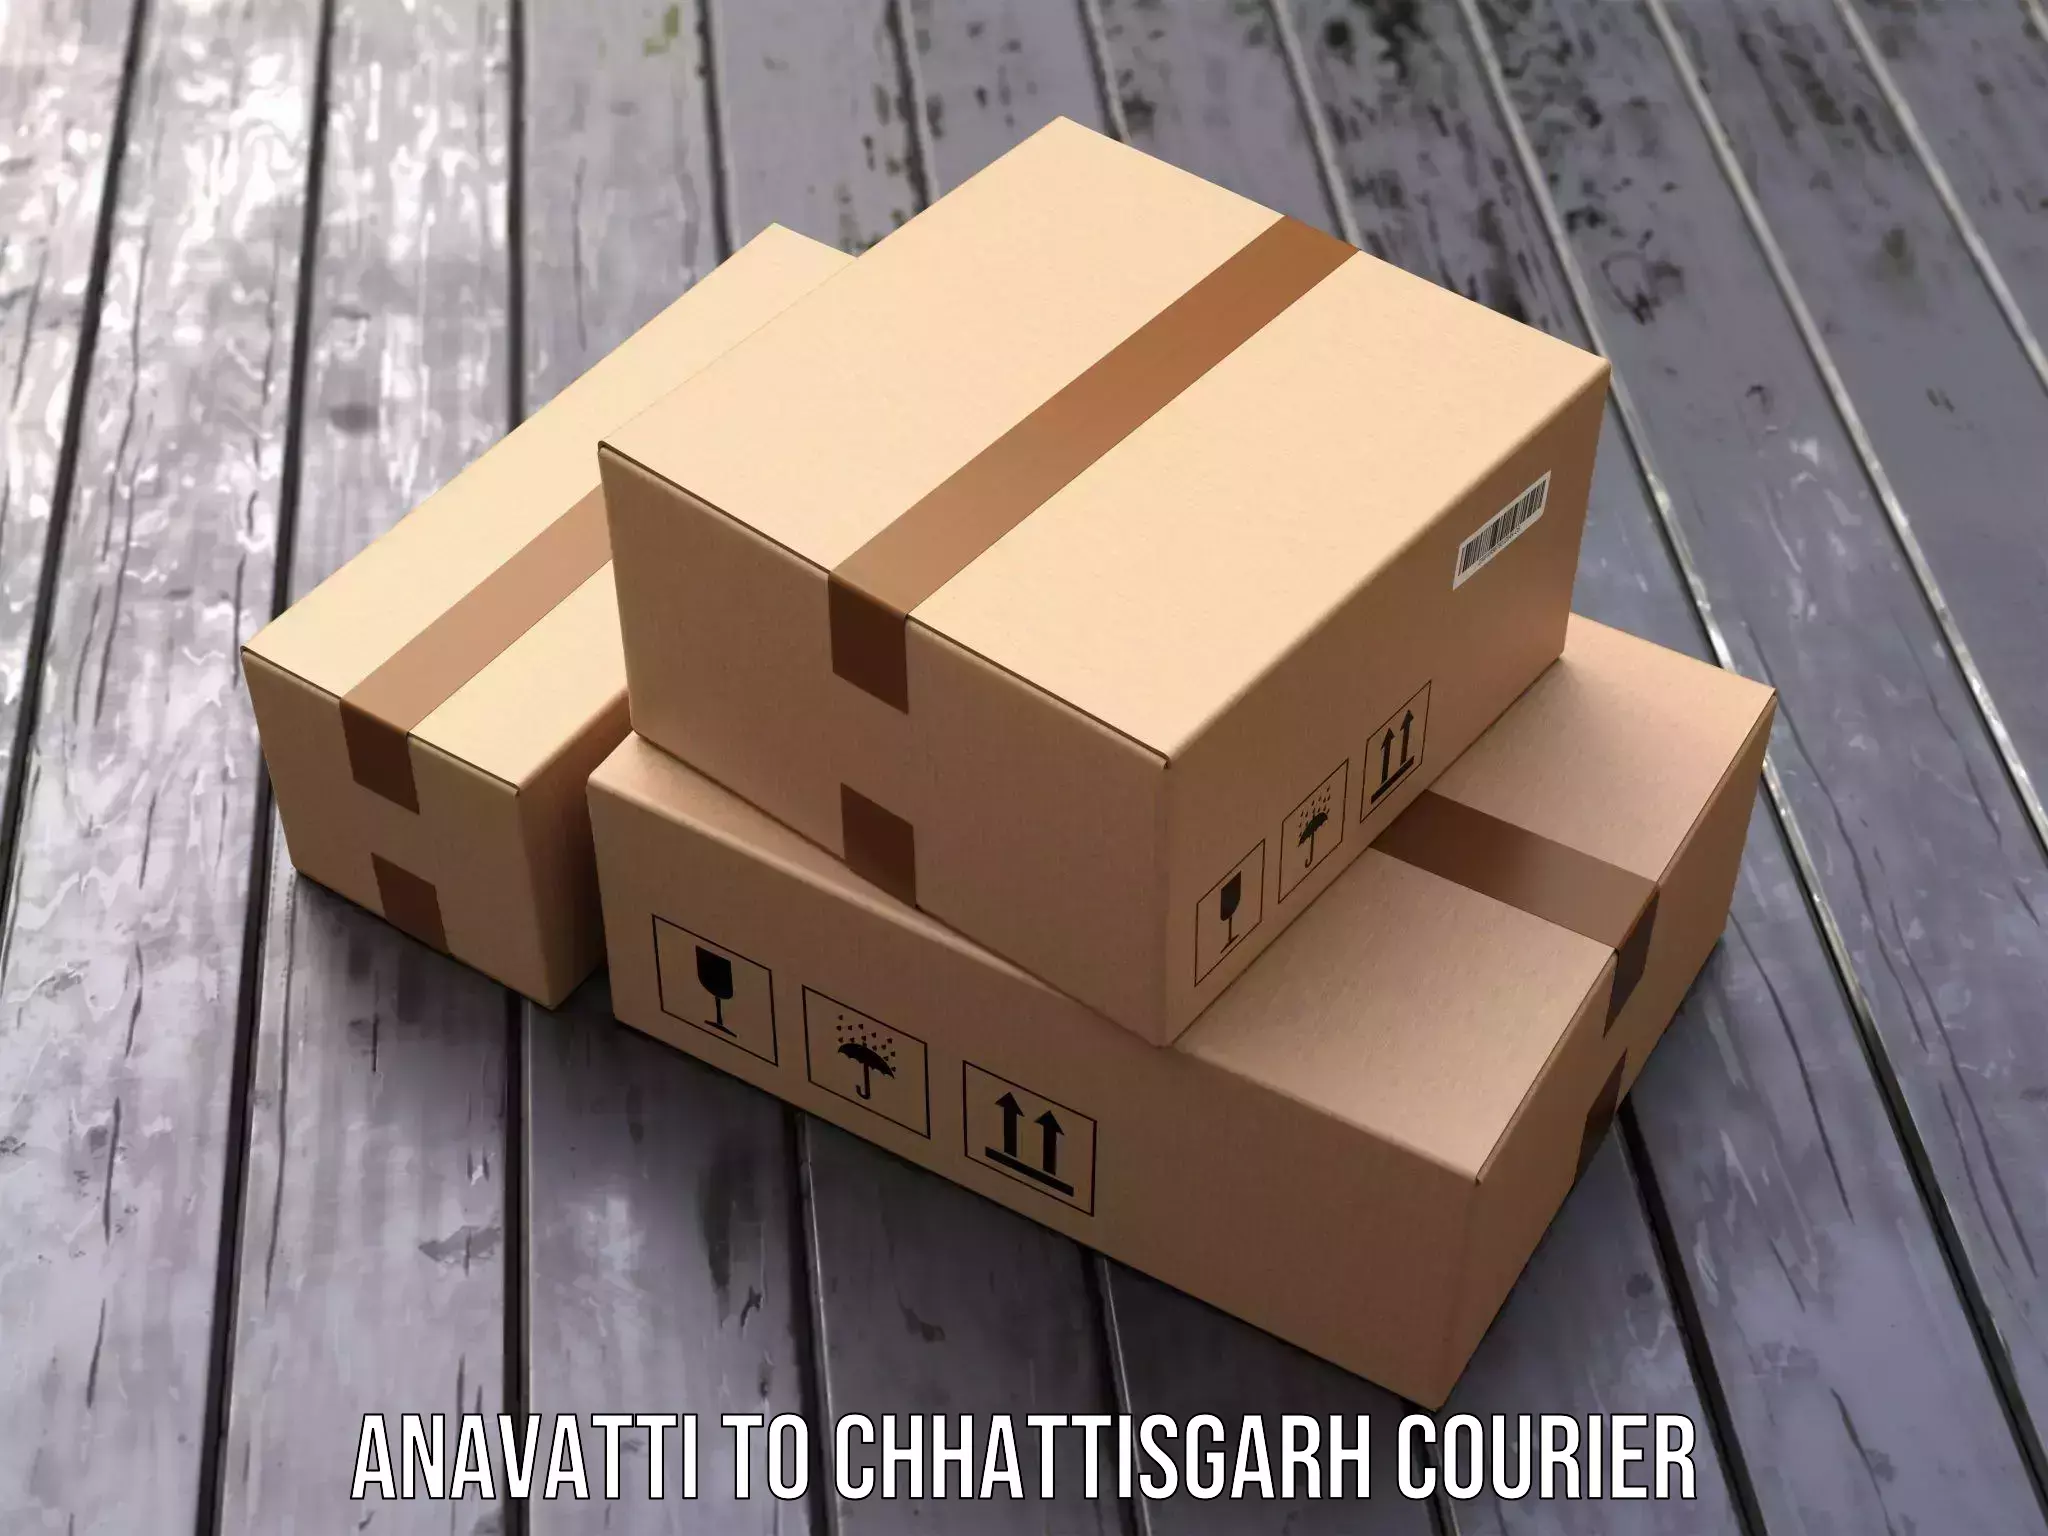 Dynamic courier services Anavatti to Bijapur Chhattisgarh